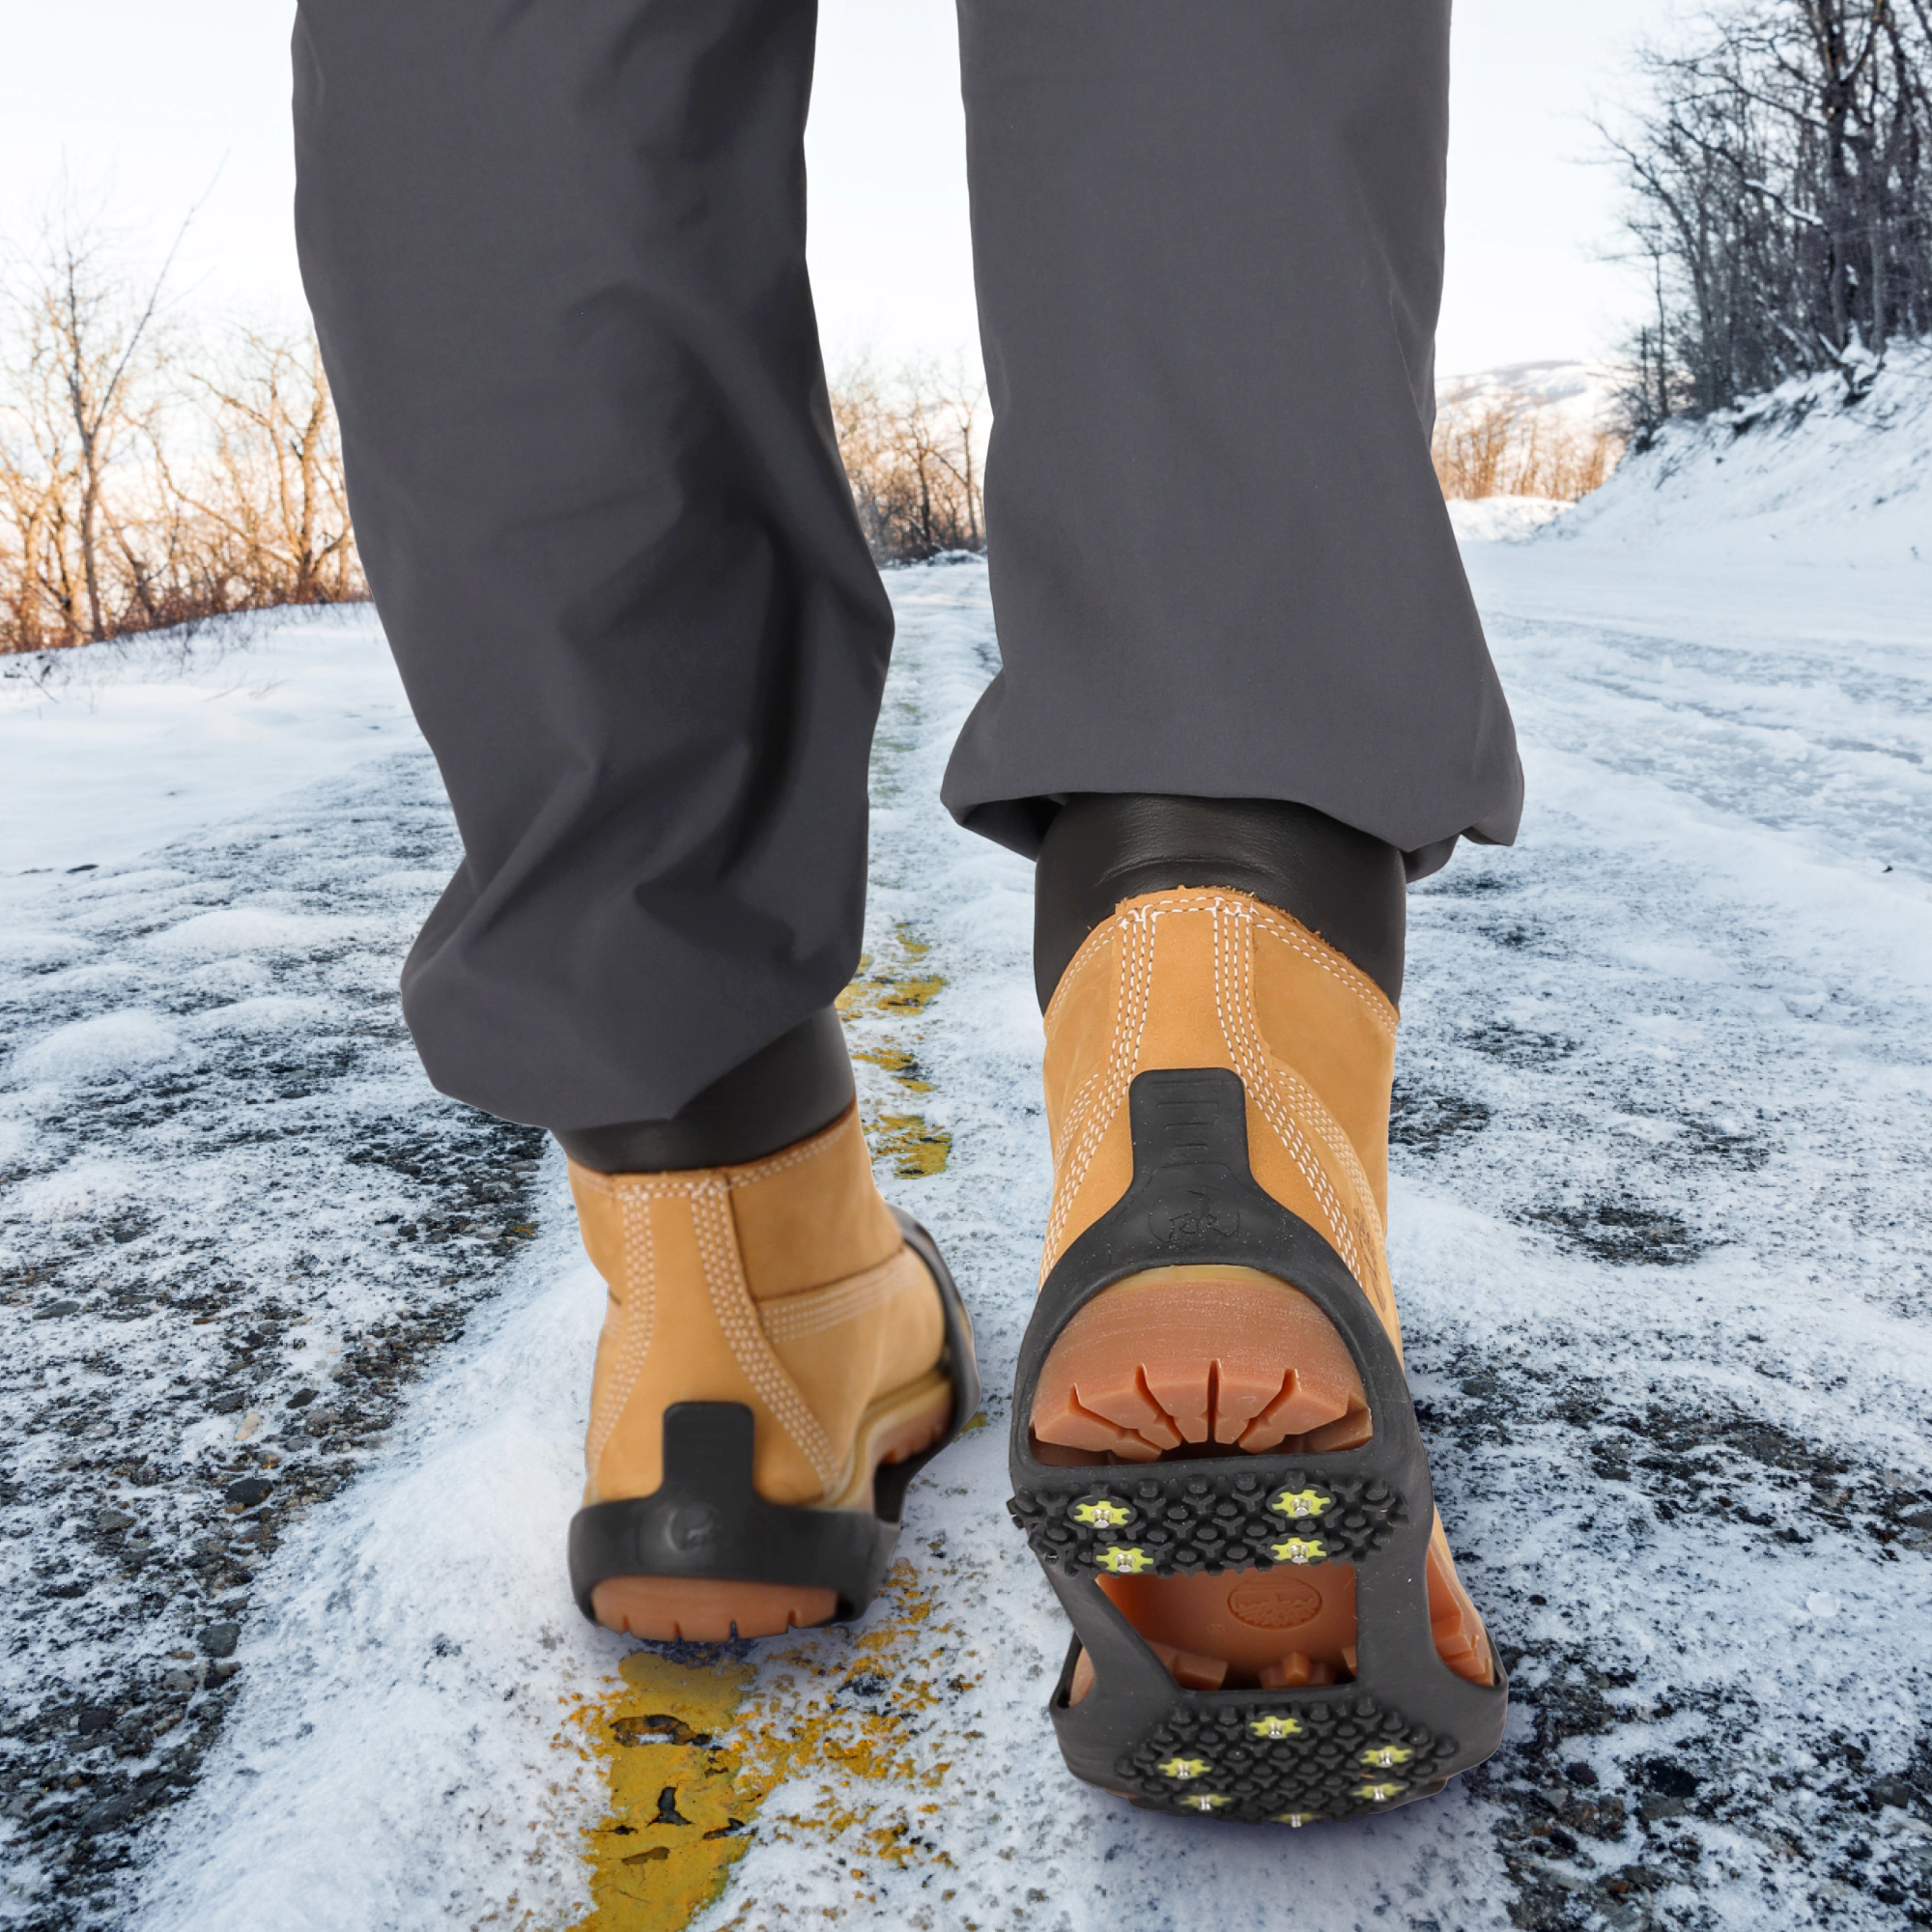 nakladki antyposlizgowe raczki na buty pod buty na snieg wytrzymale mountain goat